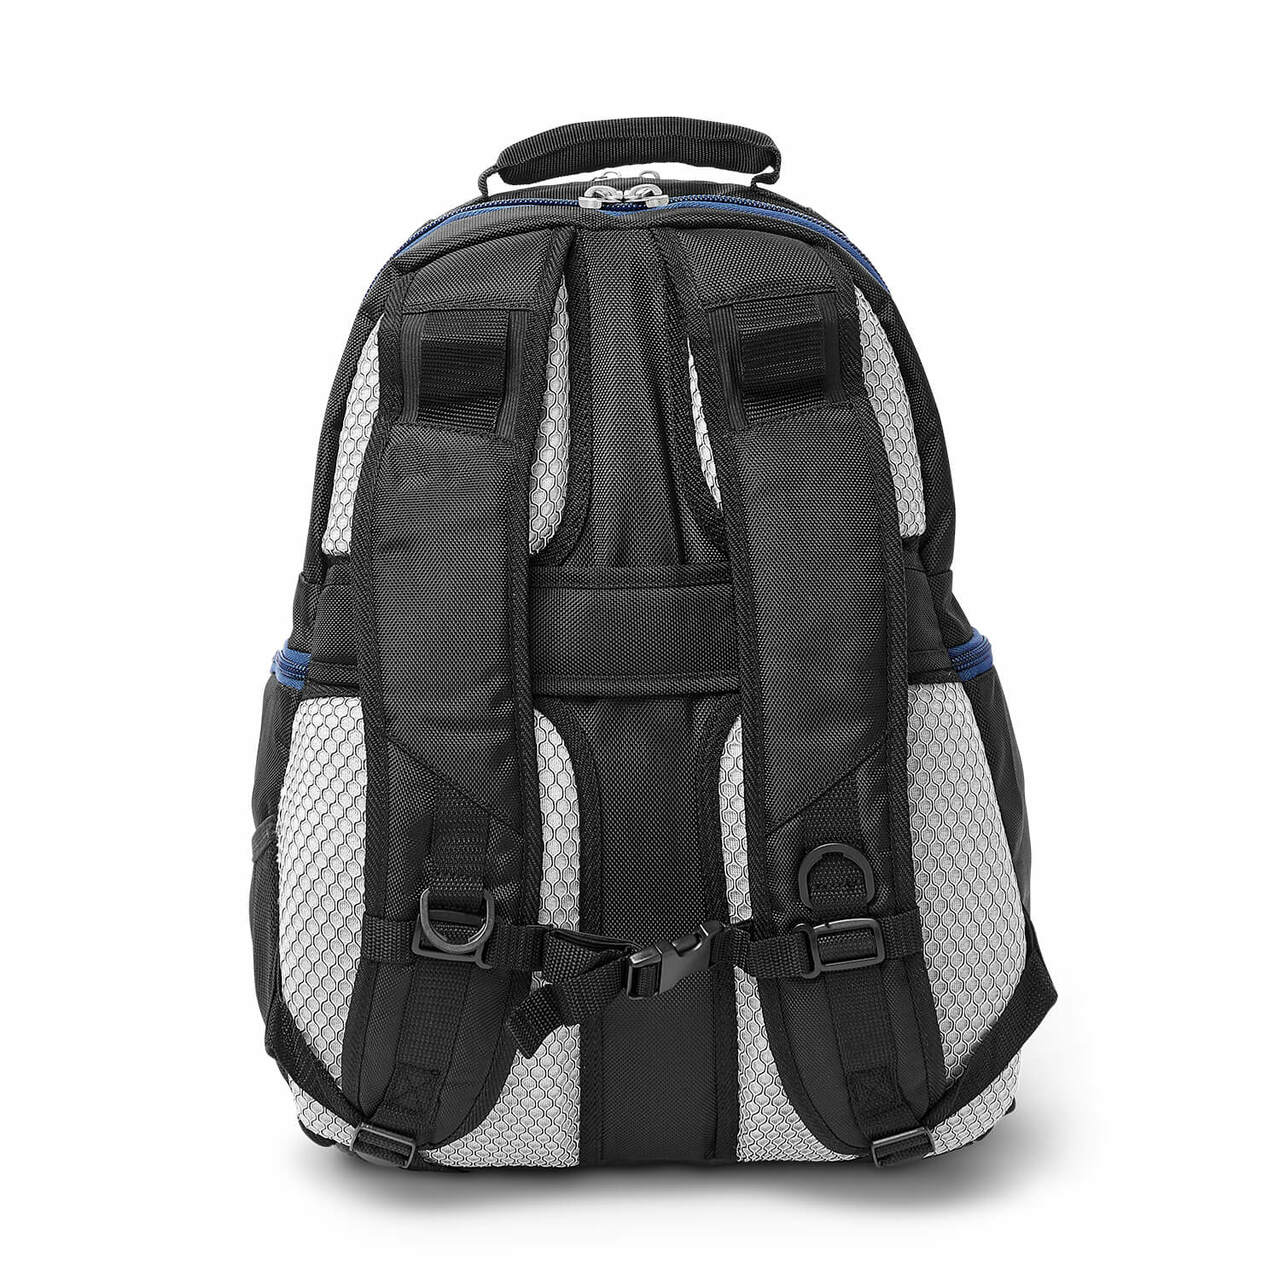 Giants Backpack | New York Giants Laptop Backpack